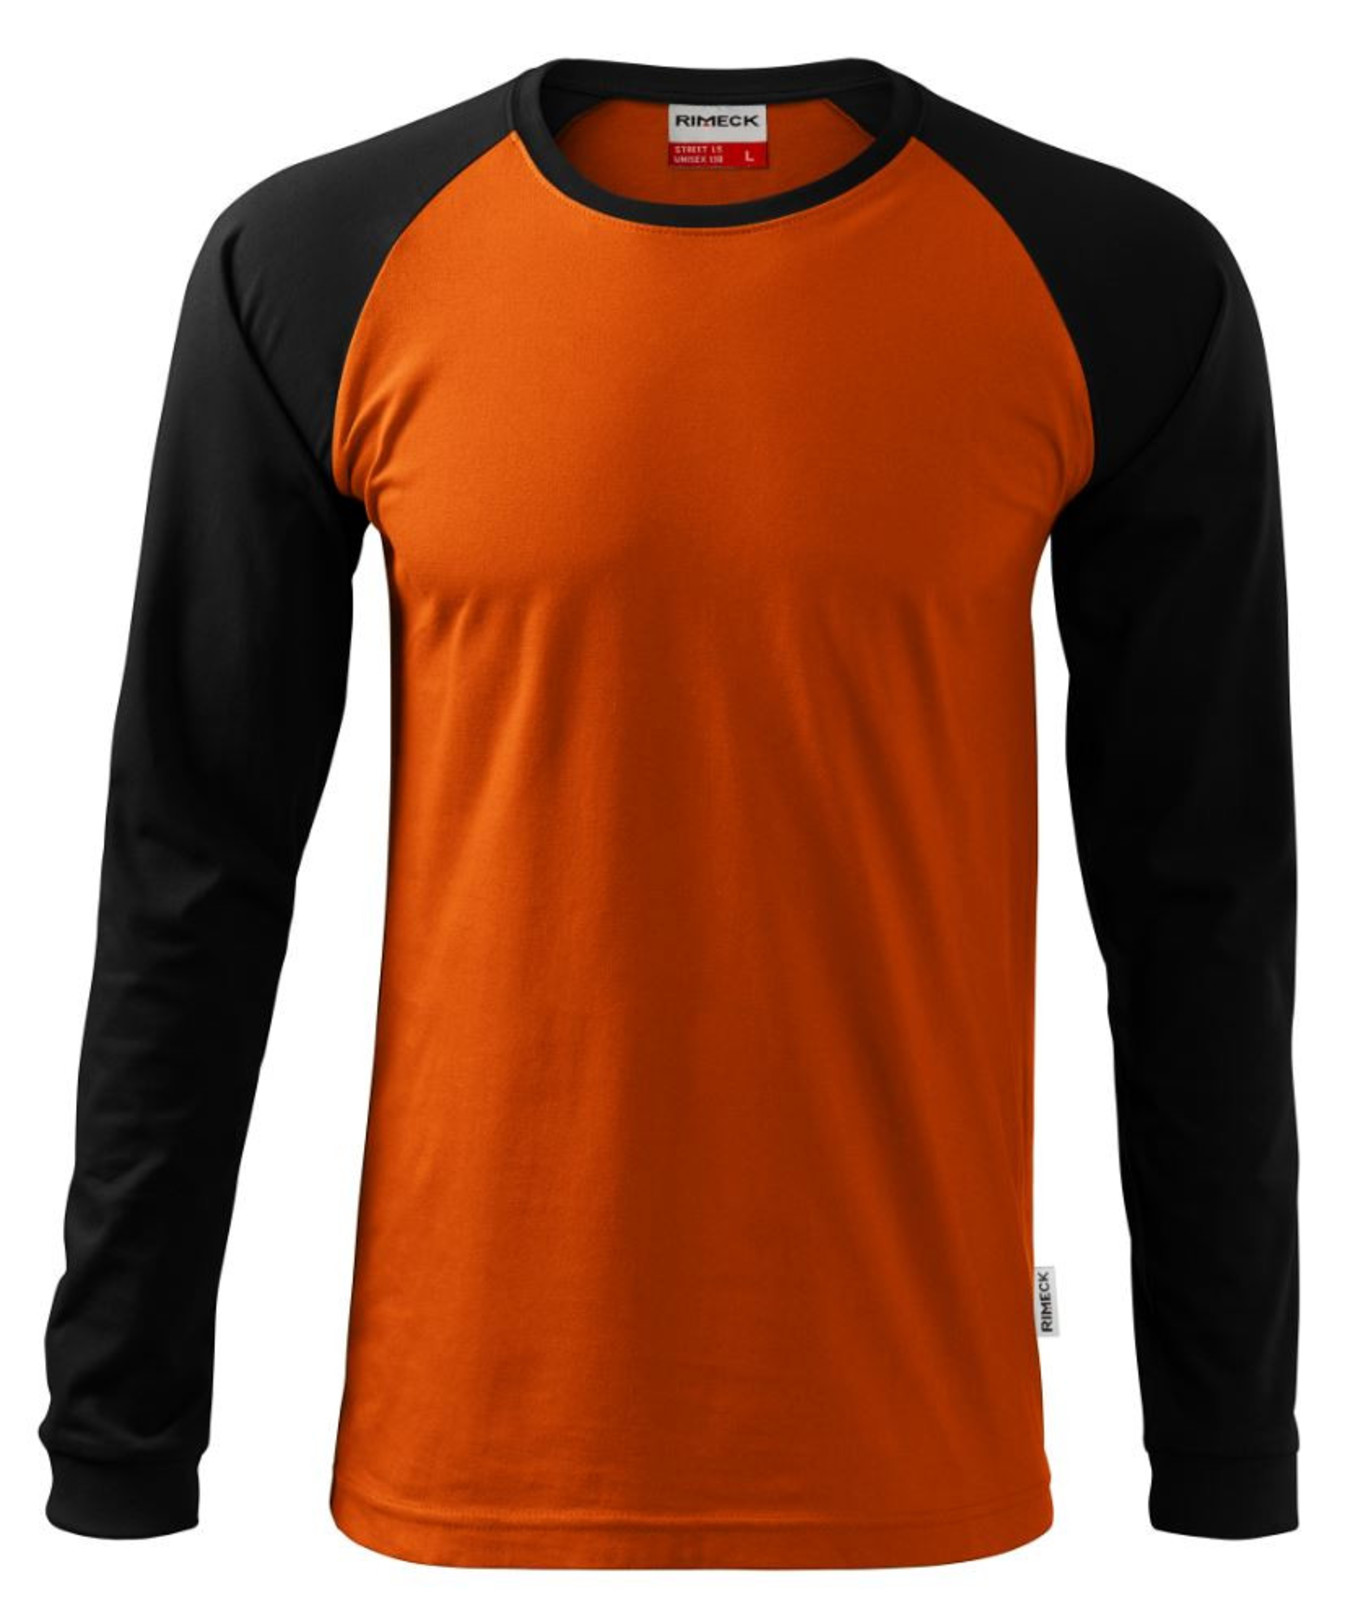 Unisex tričko s dlhým rukávom Rimeck Street LS 130 - veľkosť: 3XL, farba: tmavomodrá/svetlomodrá